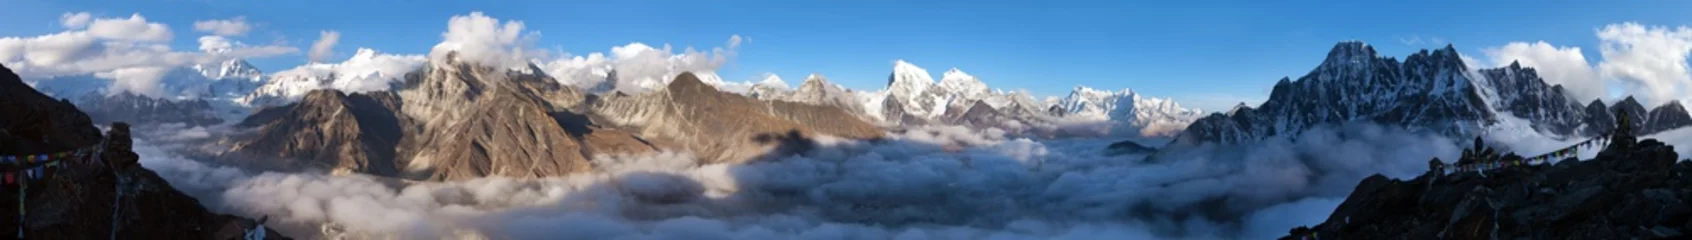 Cercles muraux Makalu Mount Everest, Lhotse, Makalu and Cho Oyu from Gokyo Ri